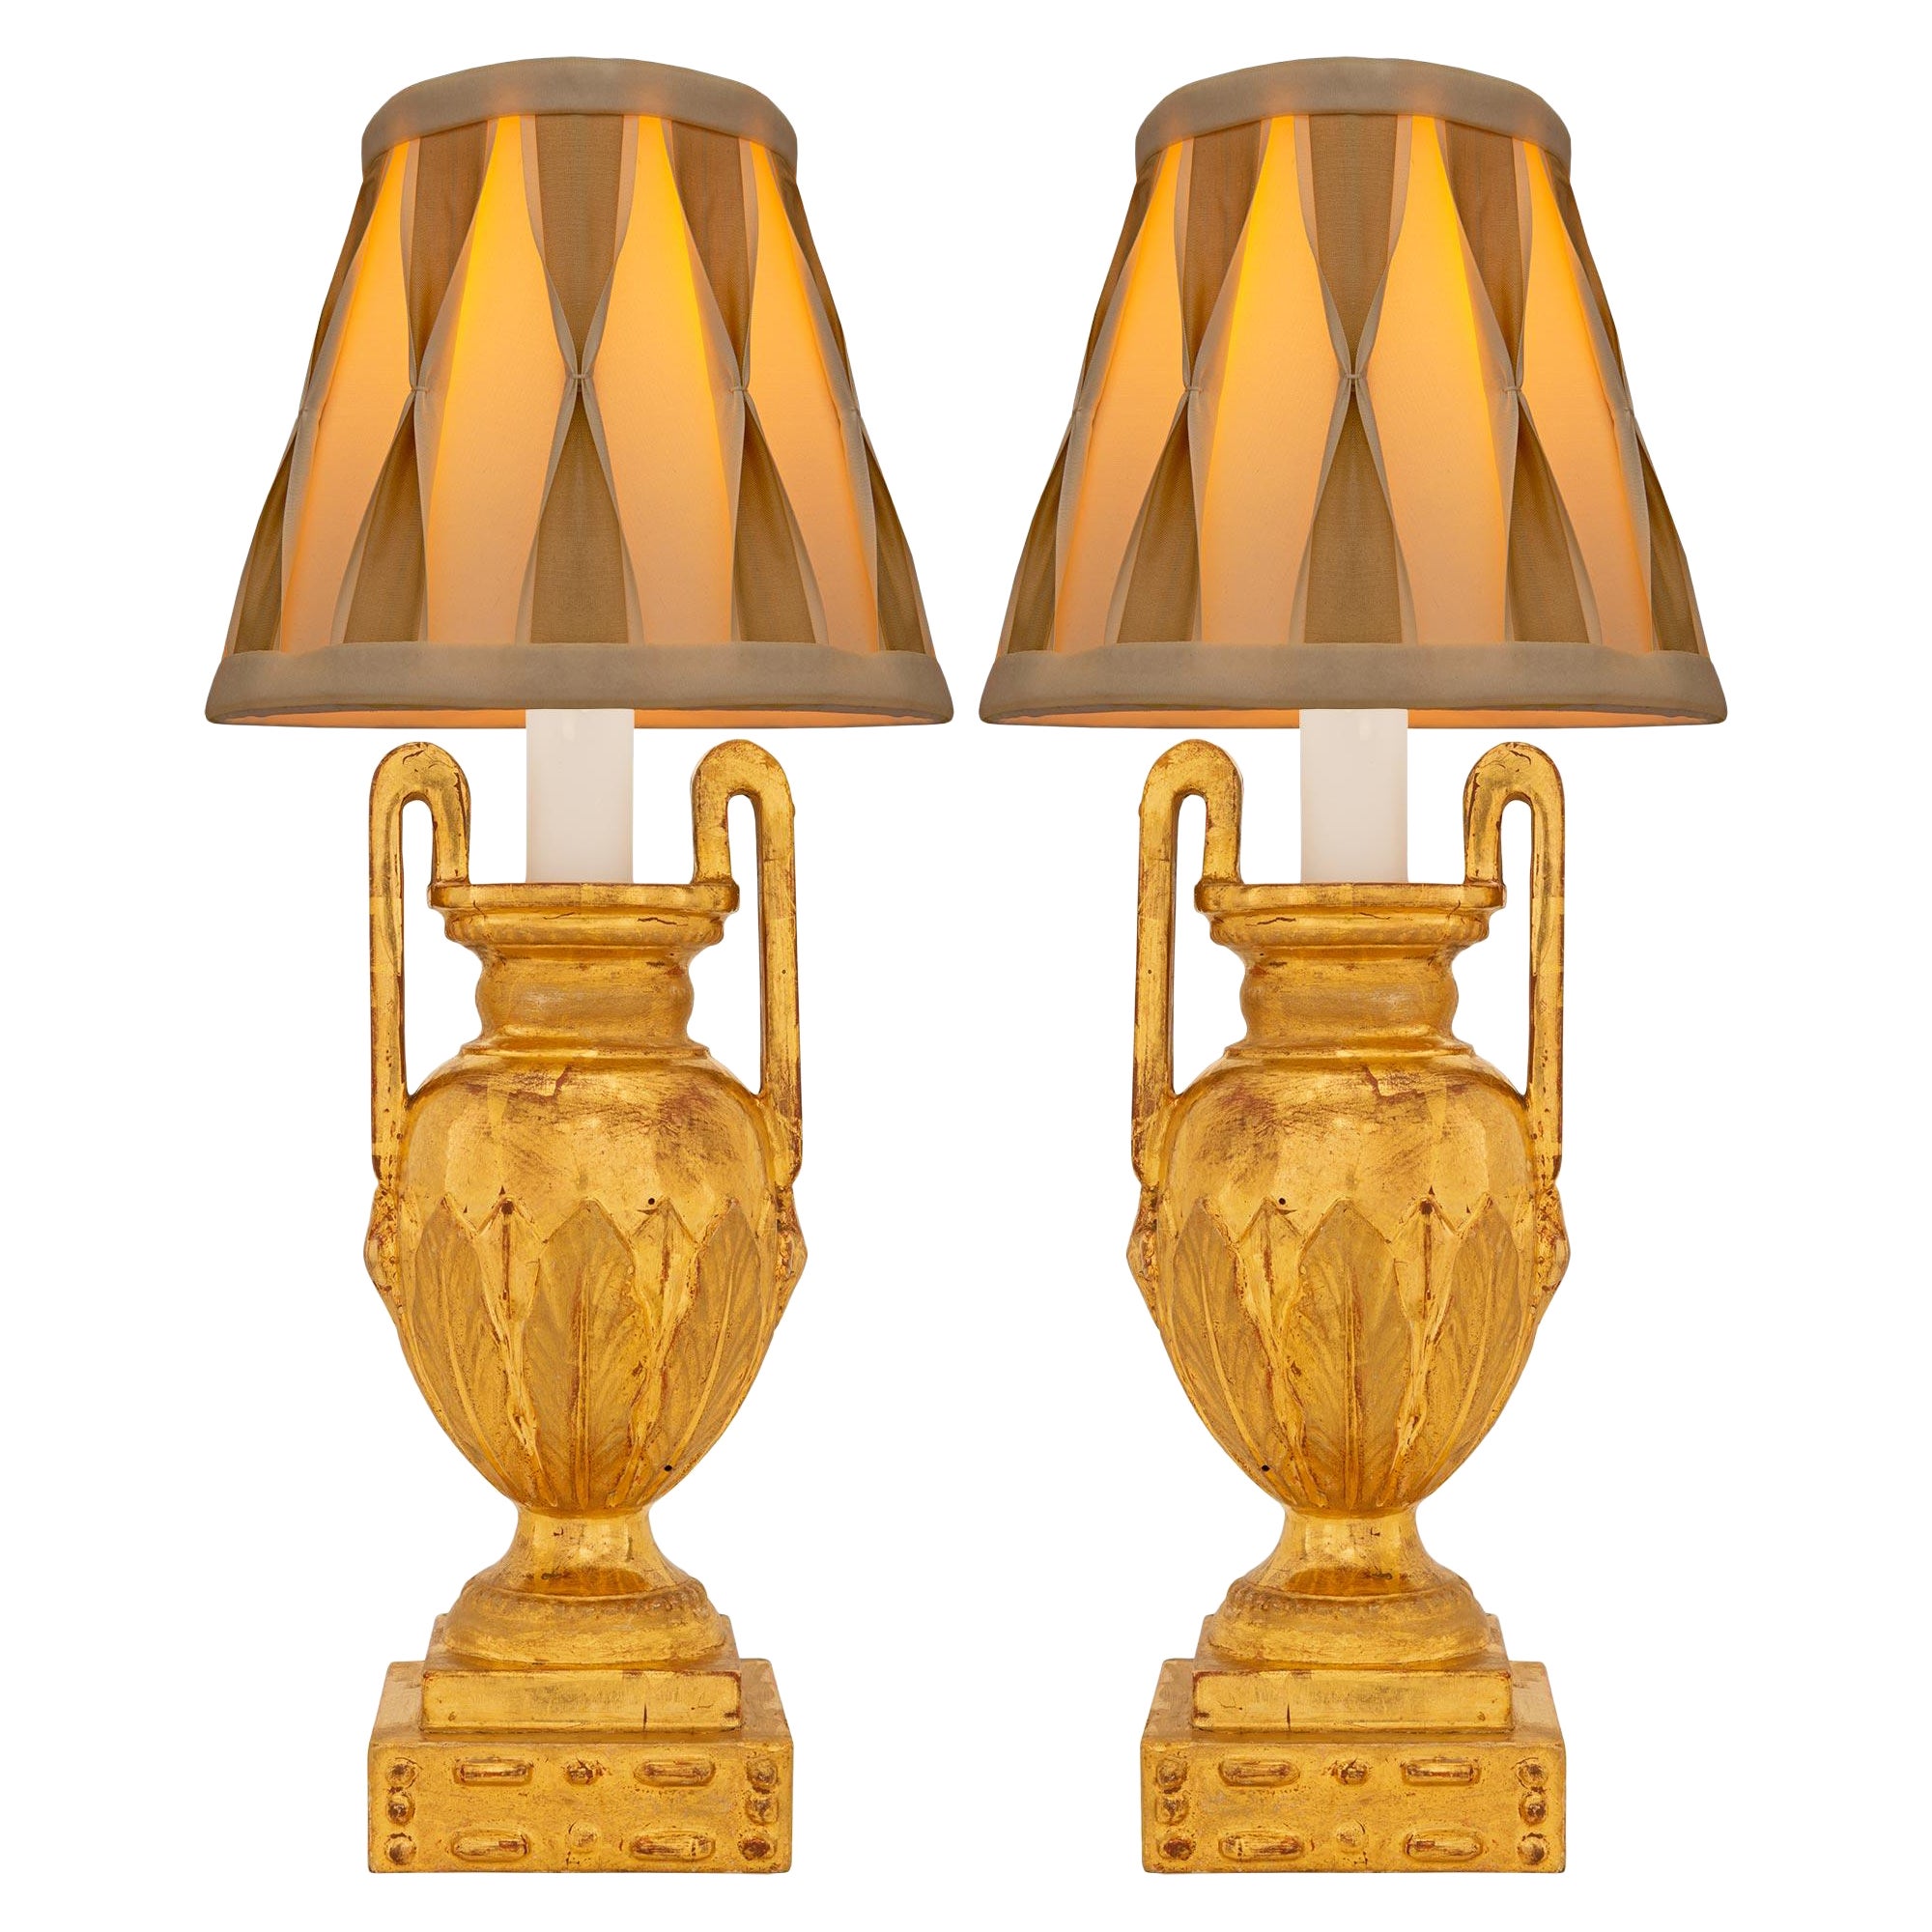 Paire de lampes italiennes du 19ème siècle en bois doré de style Louis XVI